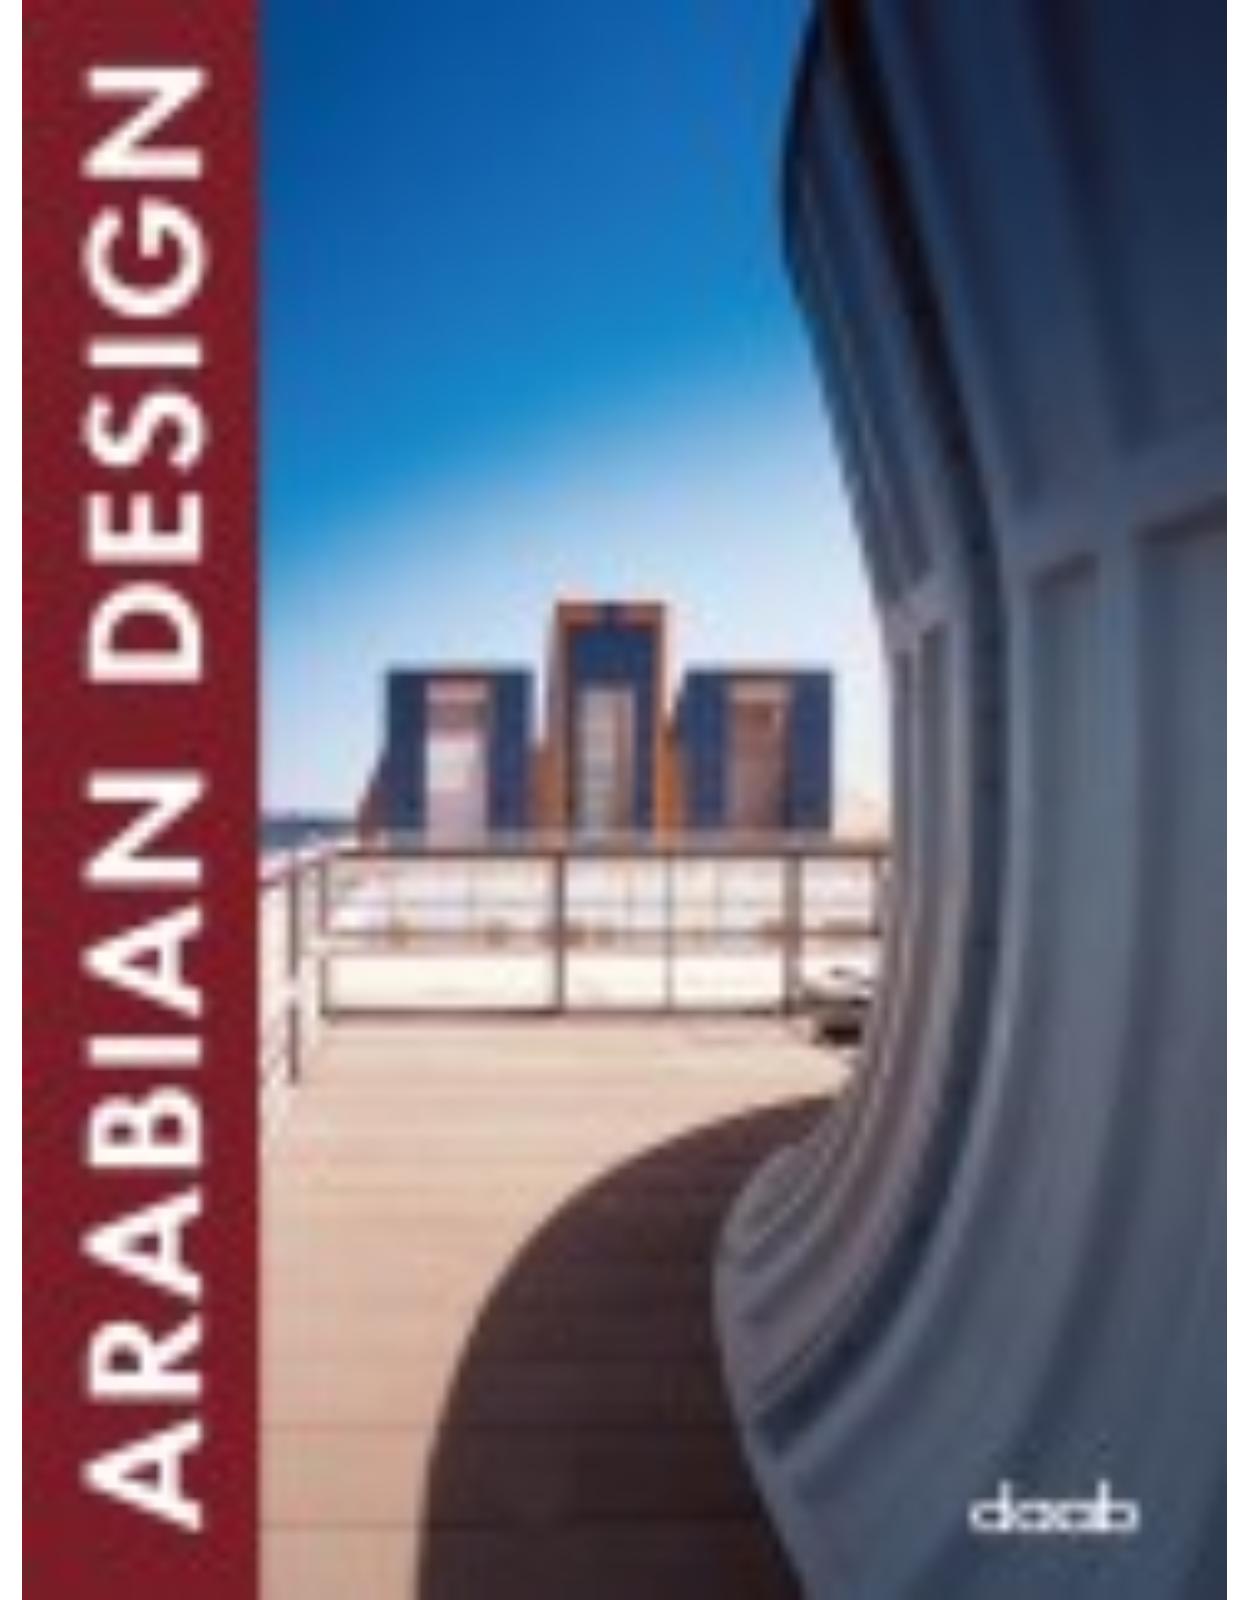 Arabian Design